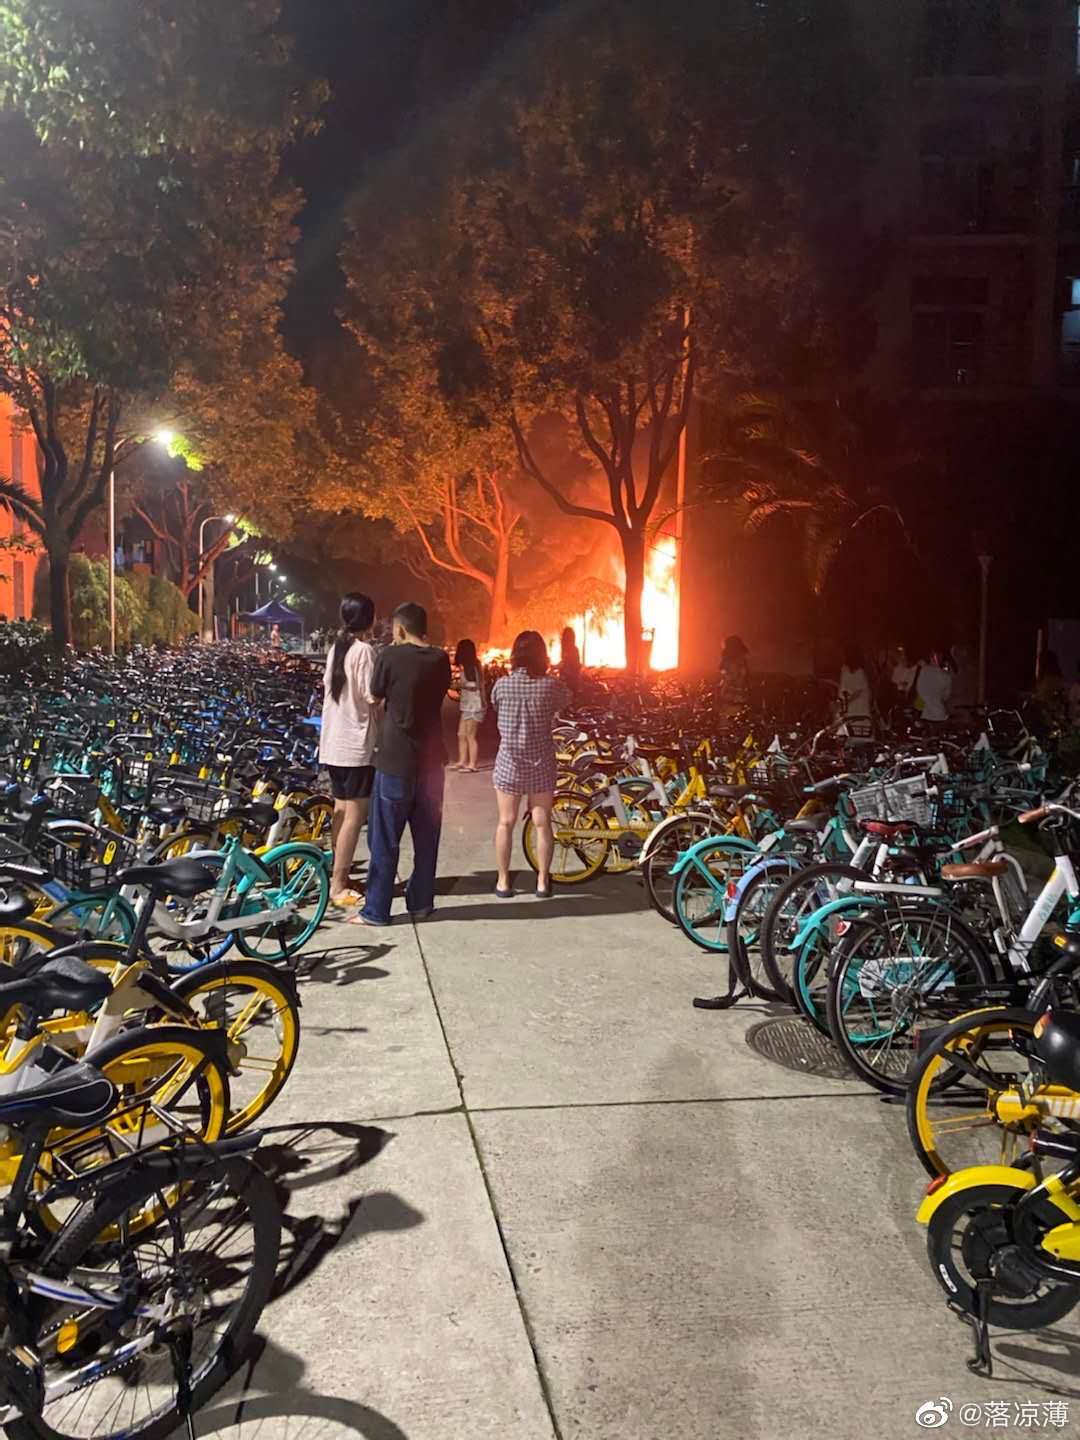 上海大学宿舍楼凌晨发生火灾 学生穿睡衣逃离火场